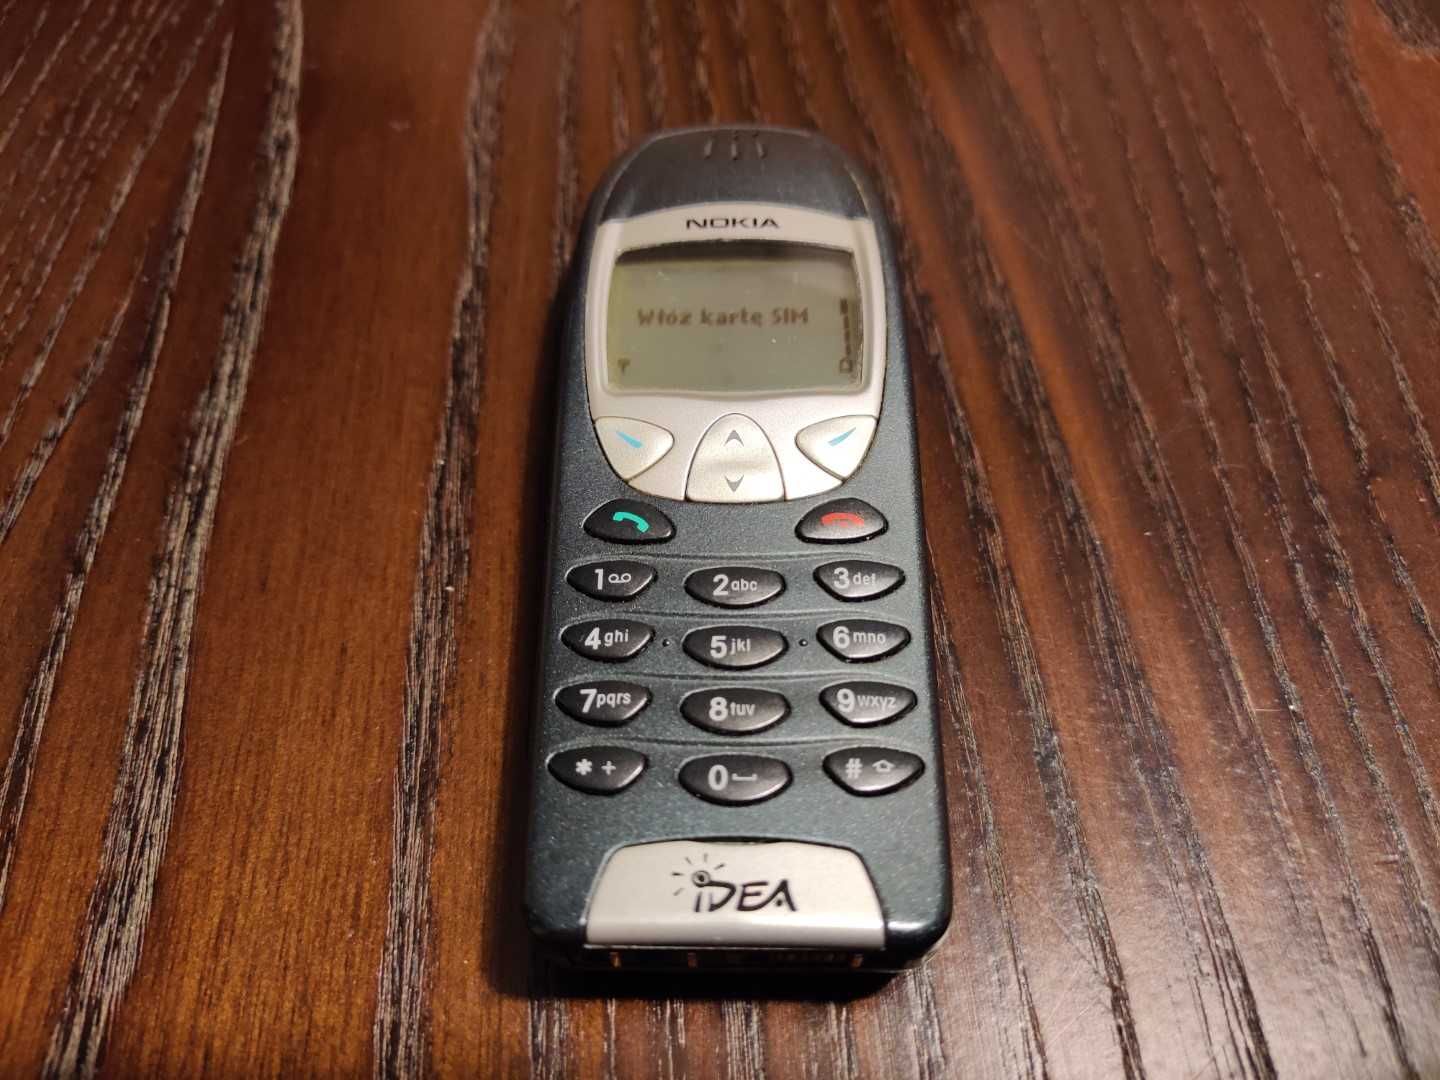 Nokia 6210 telefon komórkowy